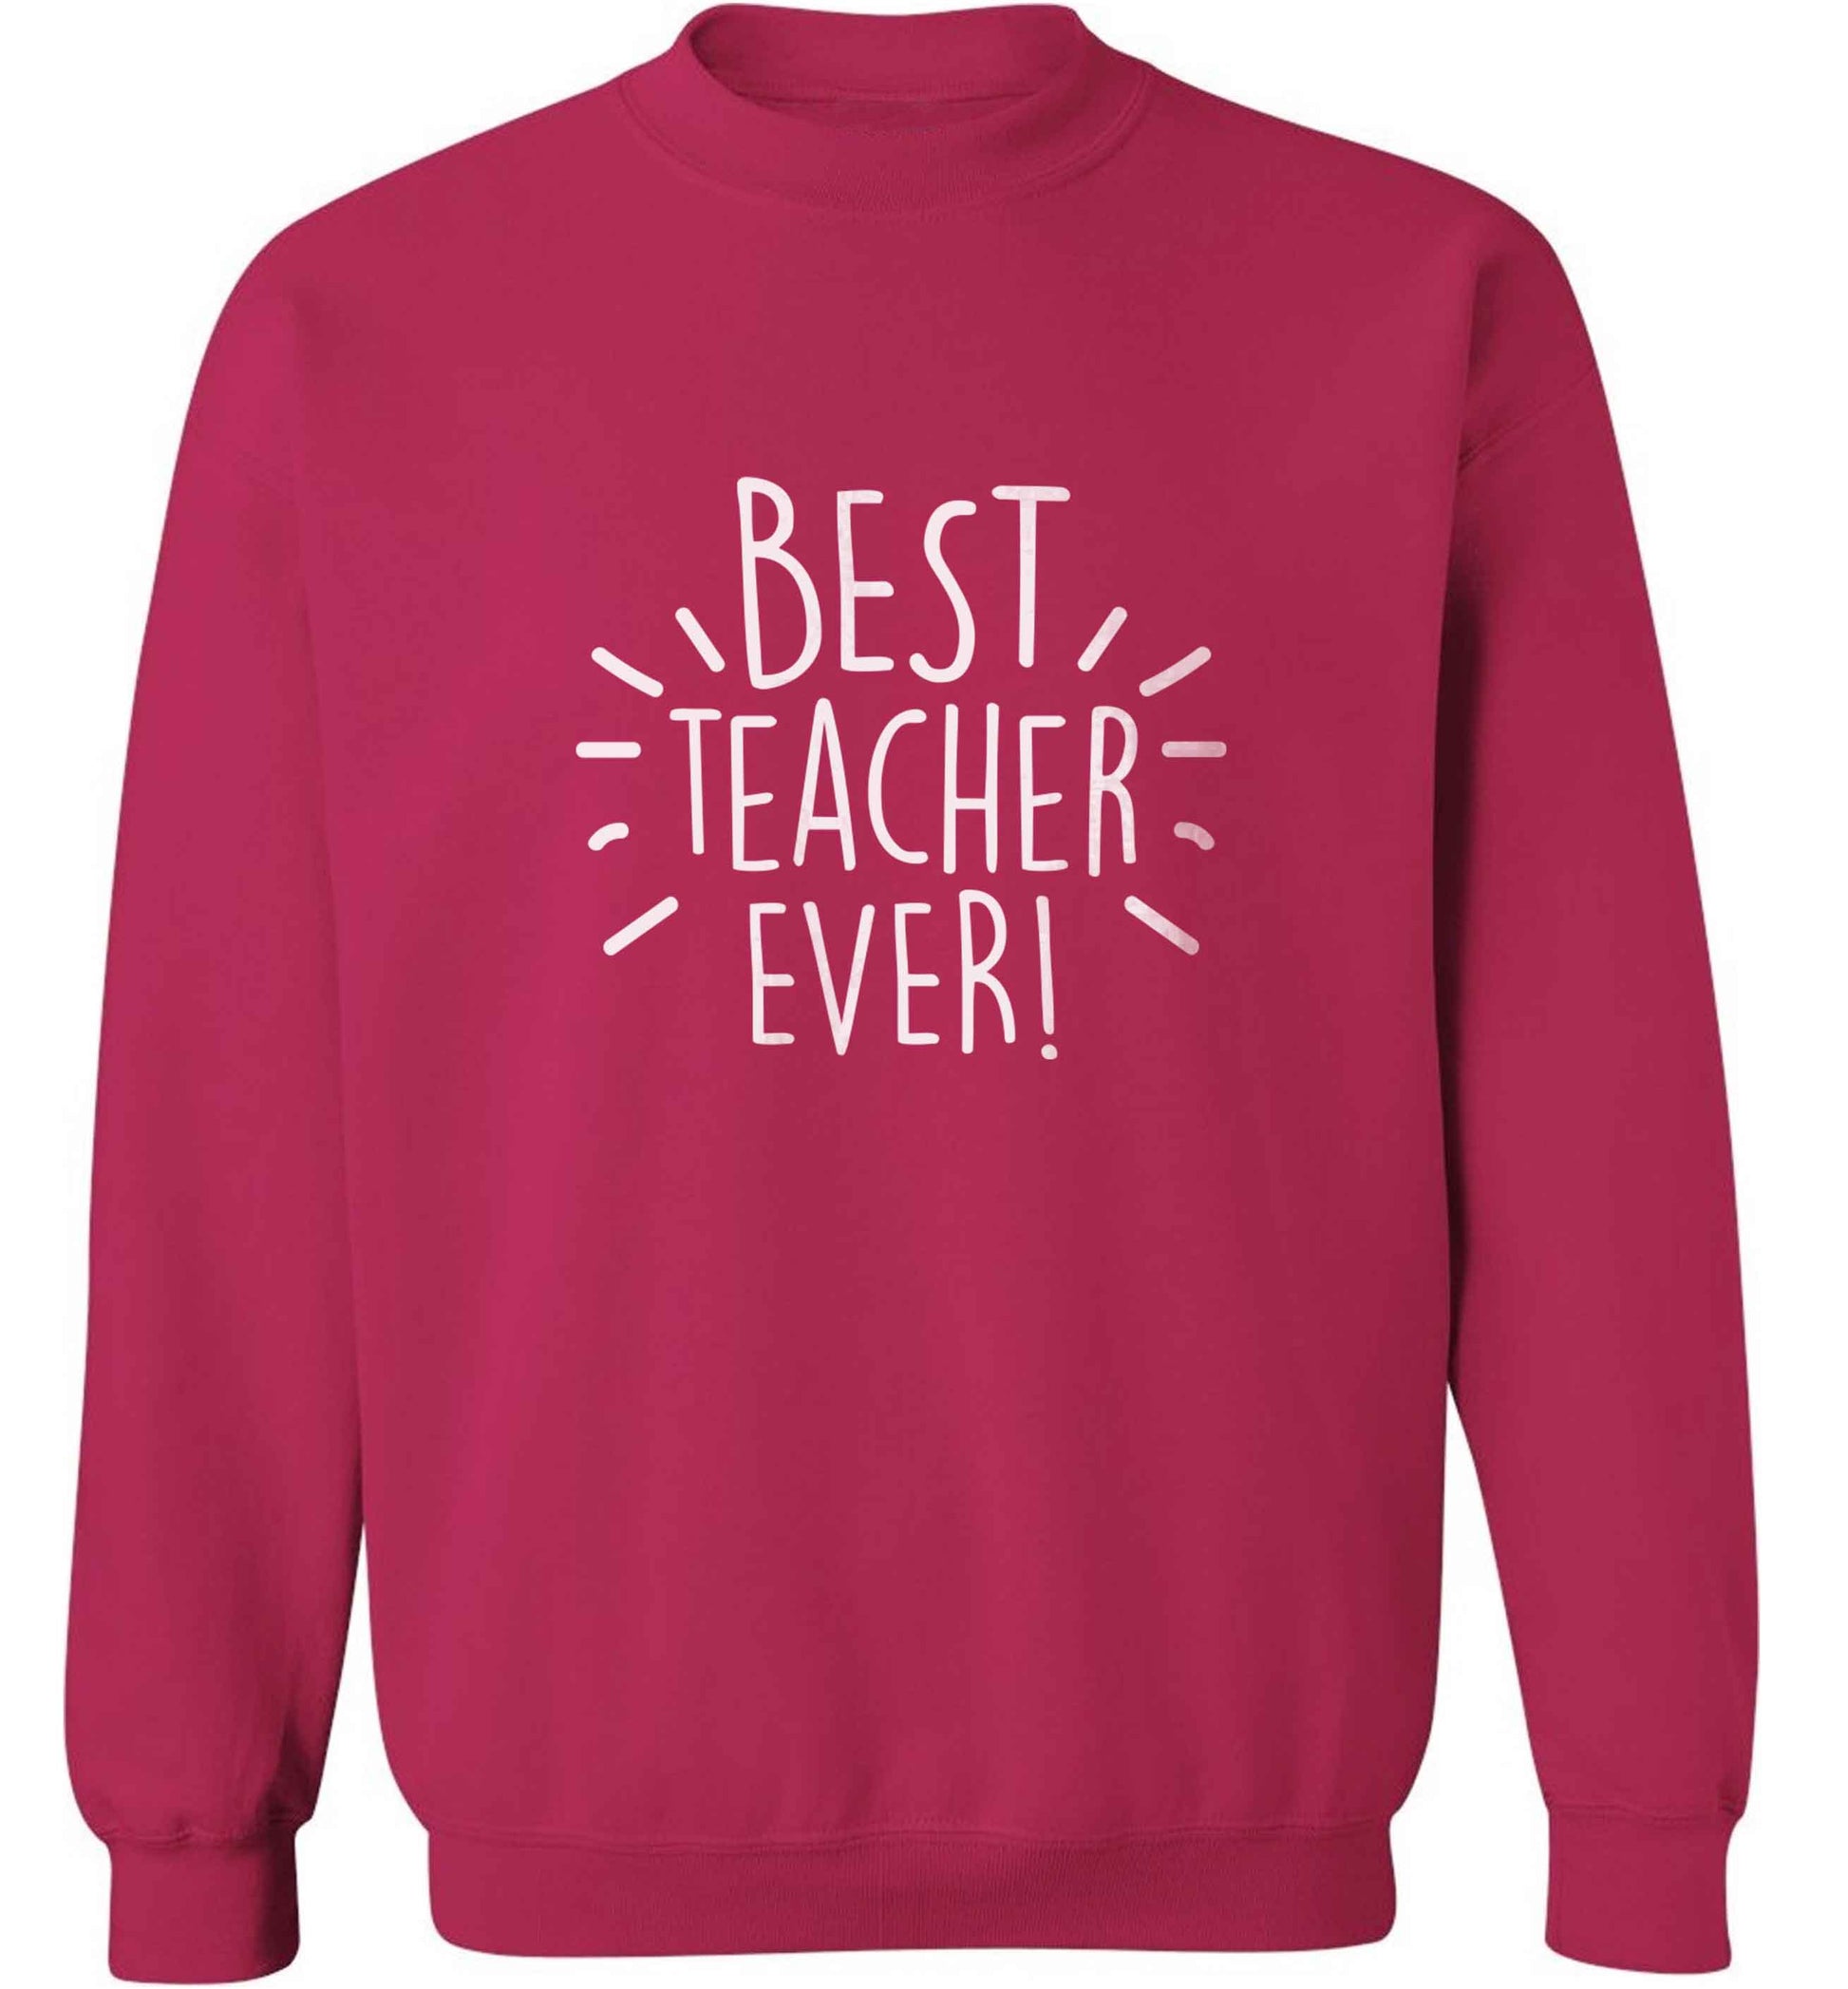 Best teacher ever! adult's unisex pink sweater 2XL